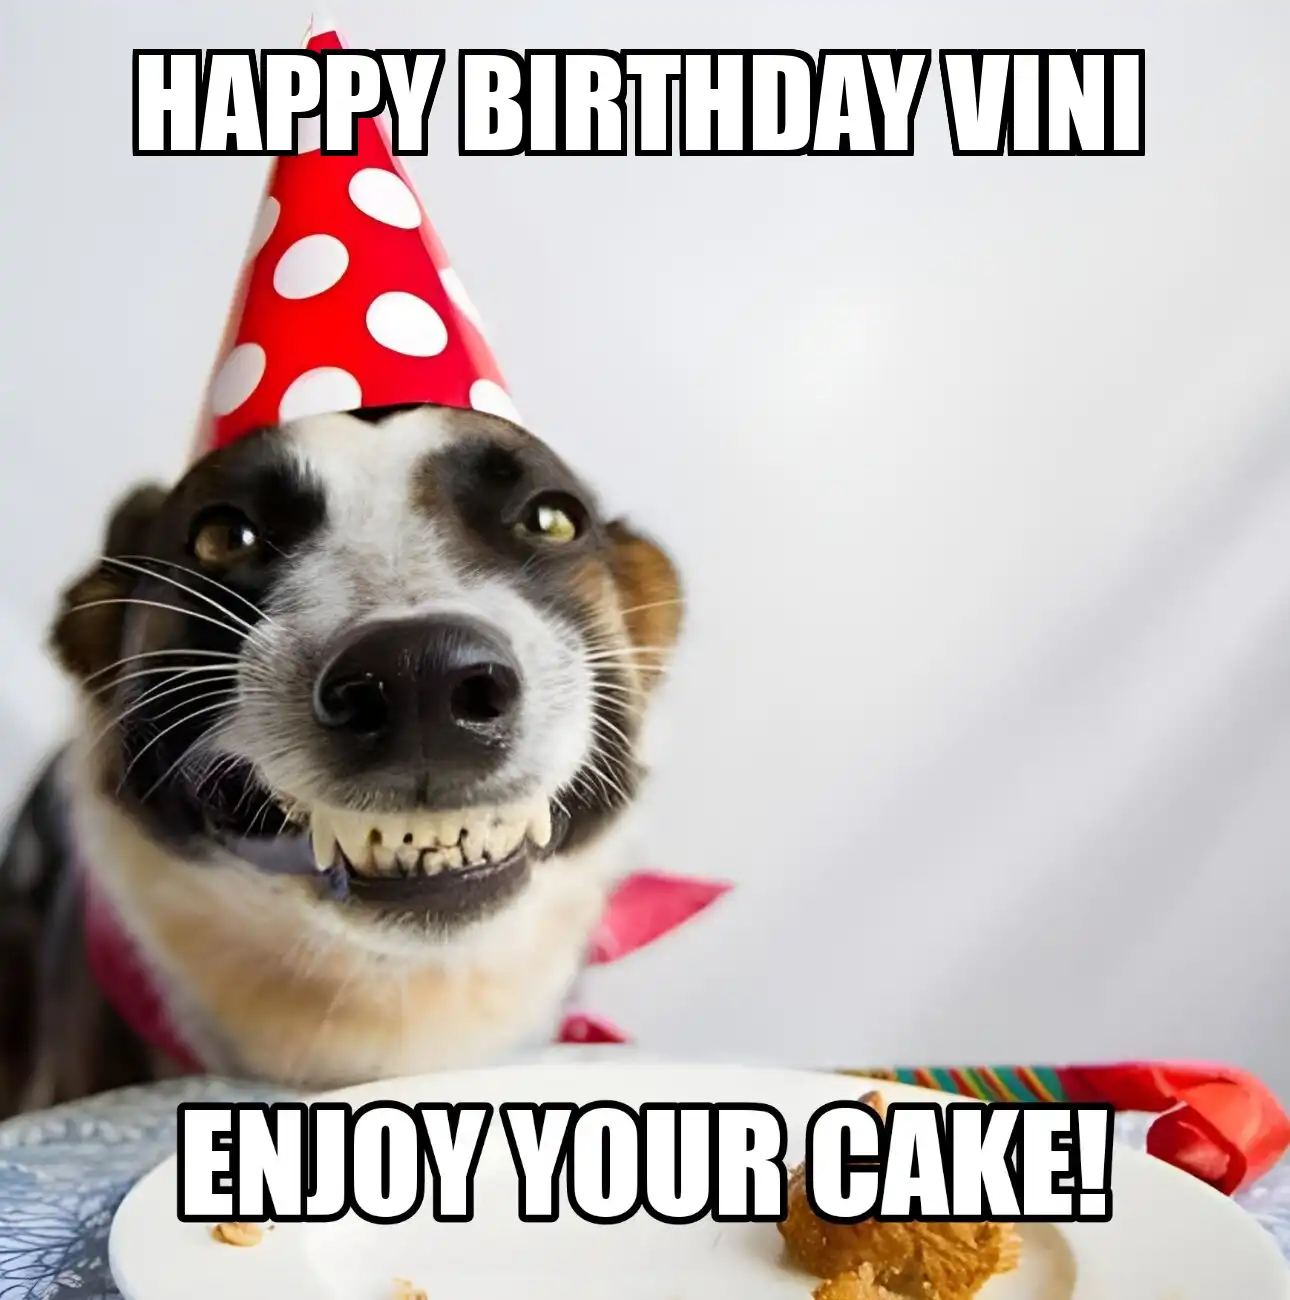 Happy Birthday Vini Enjoy Your Cake Dog Meme